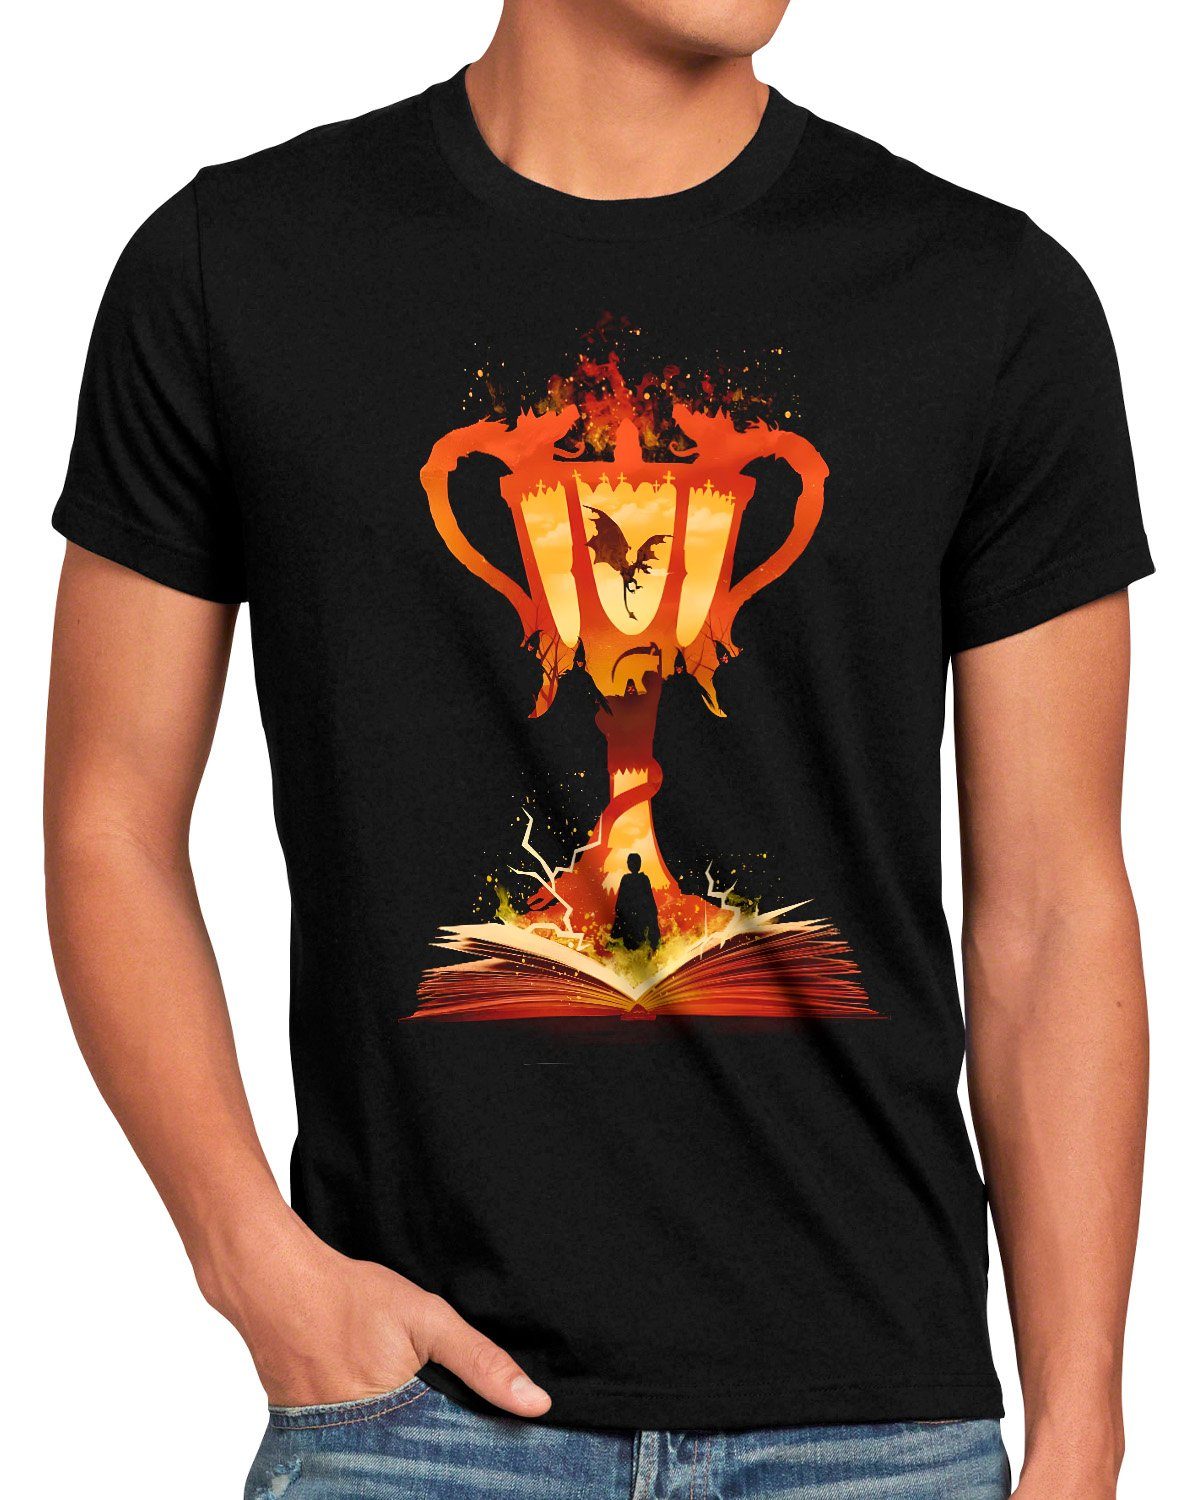 Hervorragend style3 Print-Shirt Herren T-Shirt Eternal legacy slytherin hogwarts harry ravenclaw hufflepuff potter gryffindor Fire